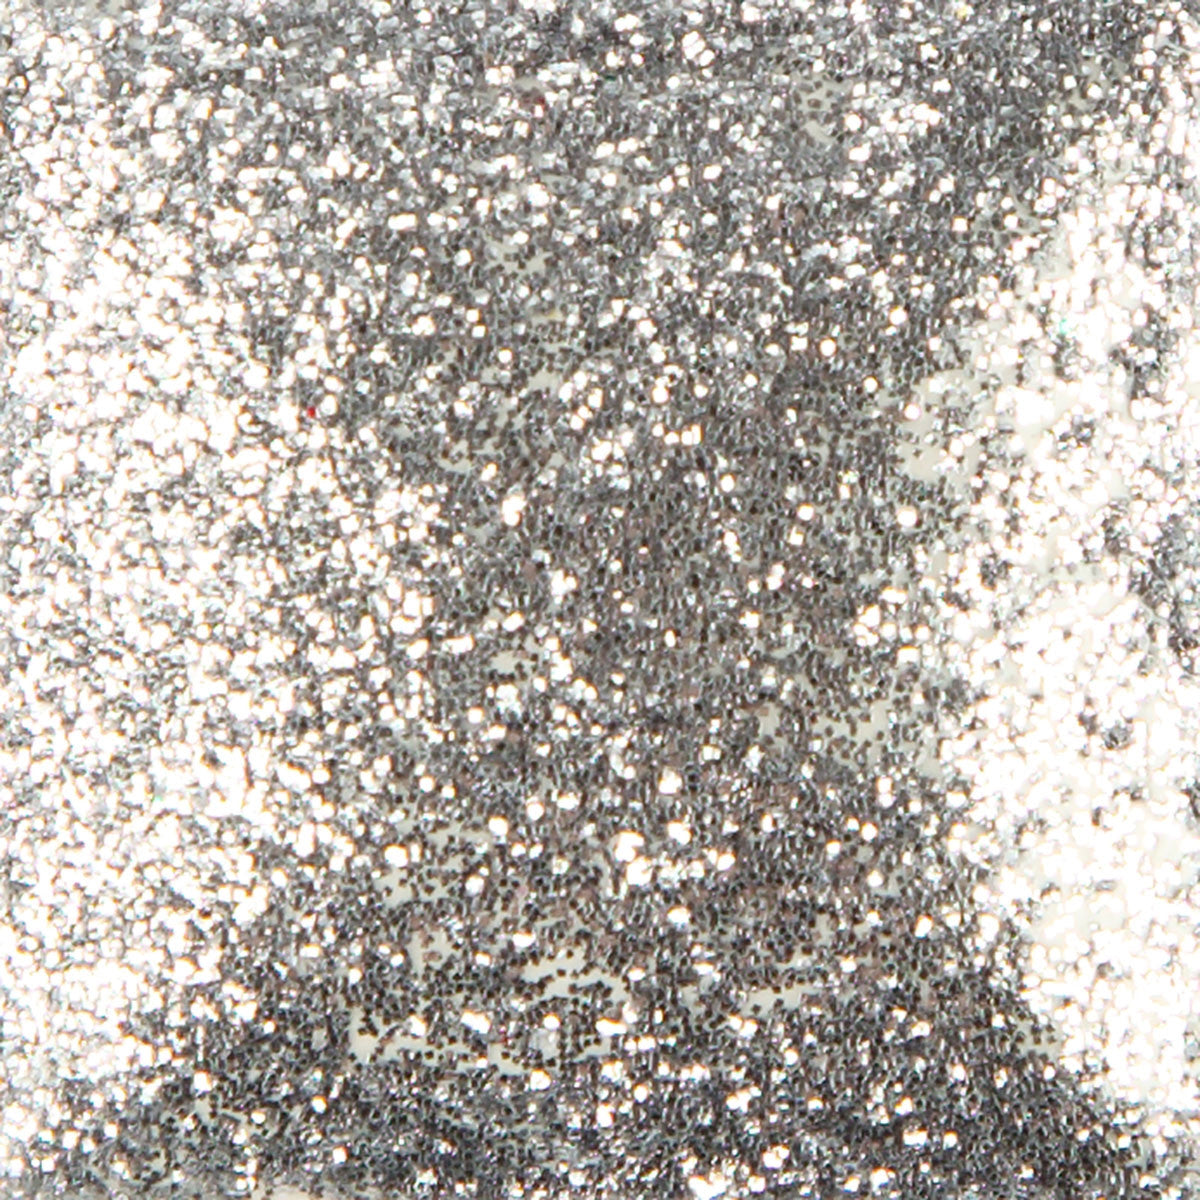 Duncan SG881 Glittering Silver Sparklers Brush-On Glitter, 2 oz